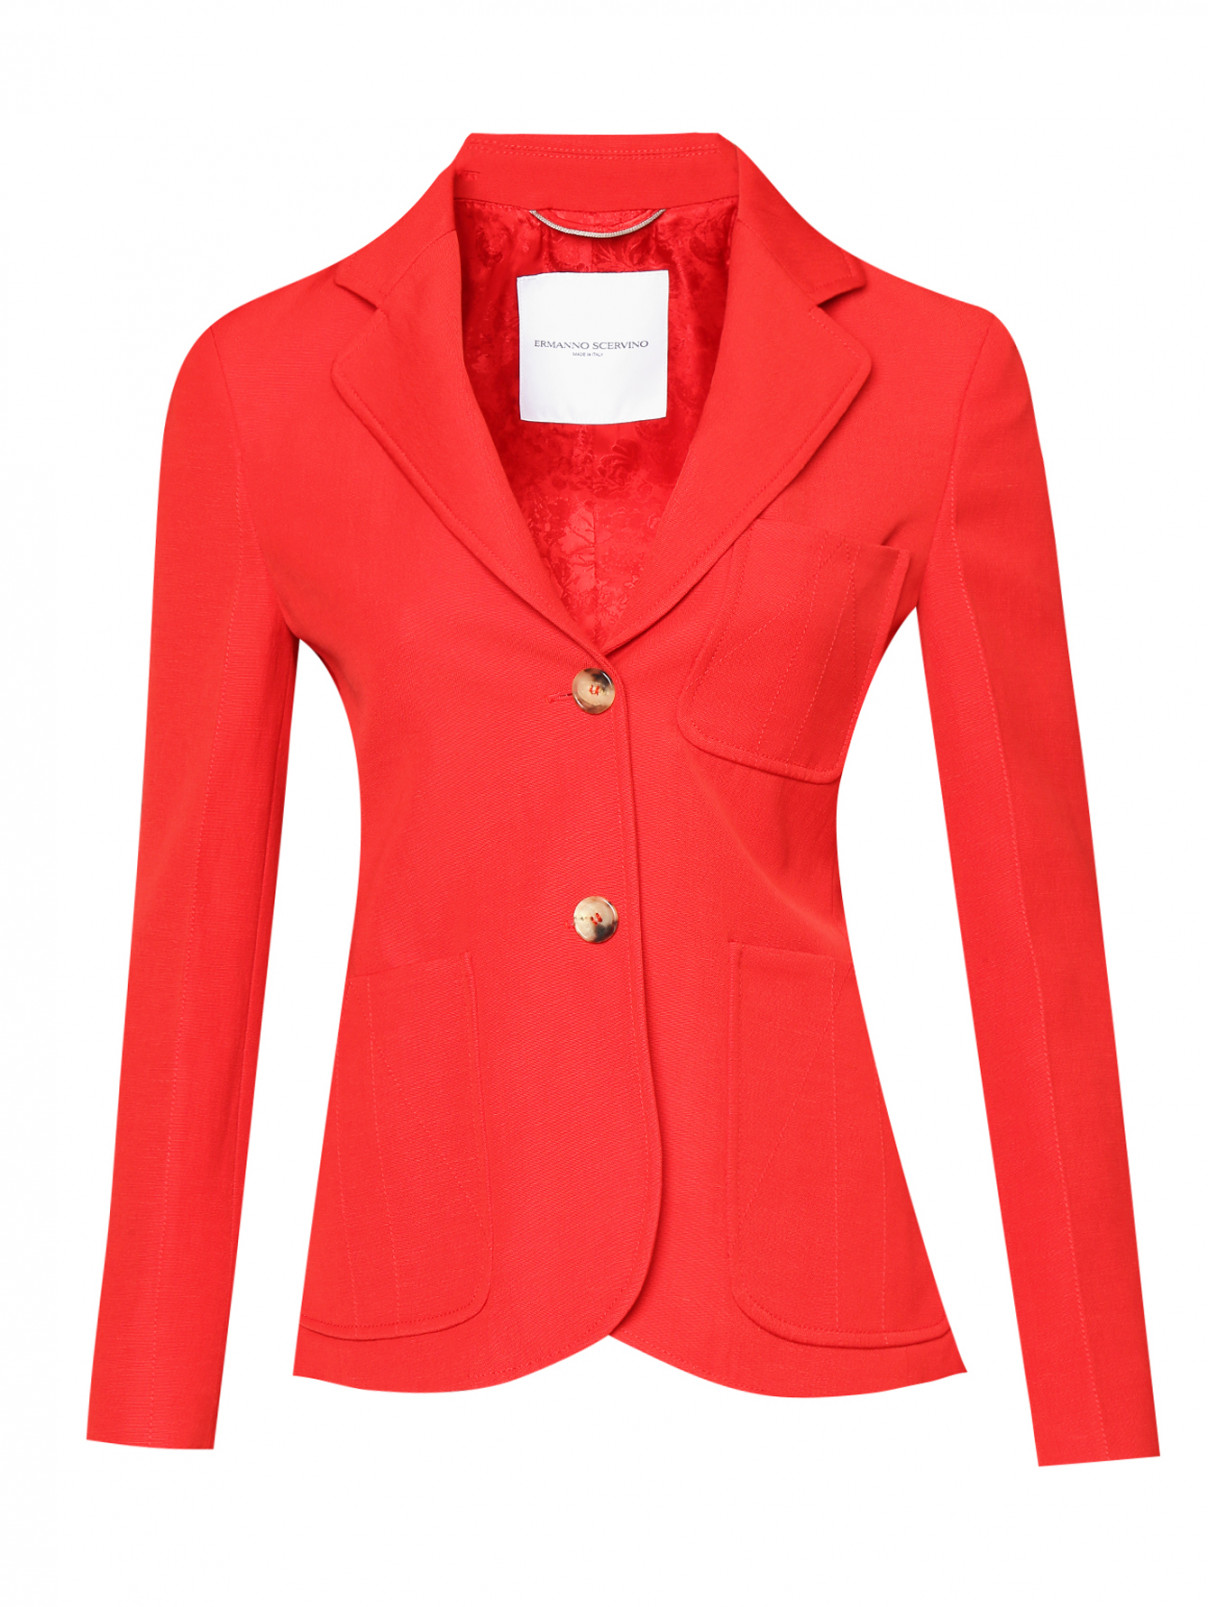 Жакет на пуговицах с накладными карманами Ermanno Scervino  –  Общий вид  – Цвет:  Красный